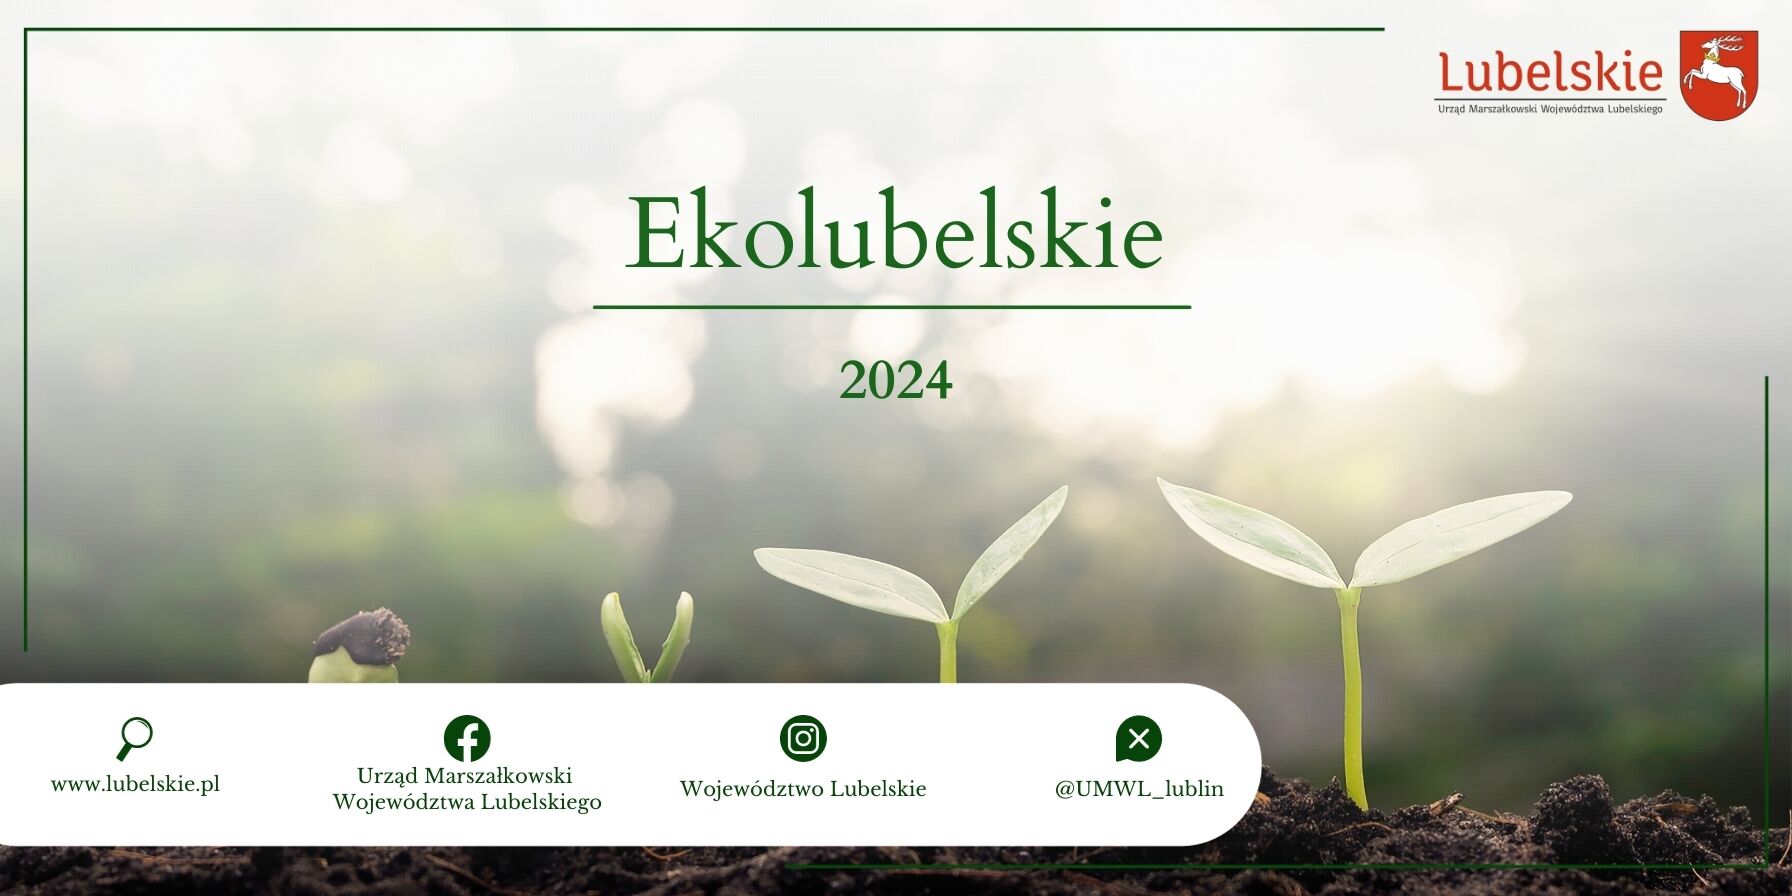 Opis alternatywny: Plakat z napisem "Ekolubelskie 2024" przedstawiający rosnące rośliny na tle zamglonego lasu, z logotypami instytucji na dolnej belce.